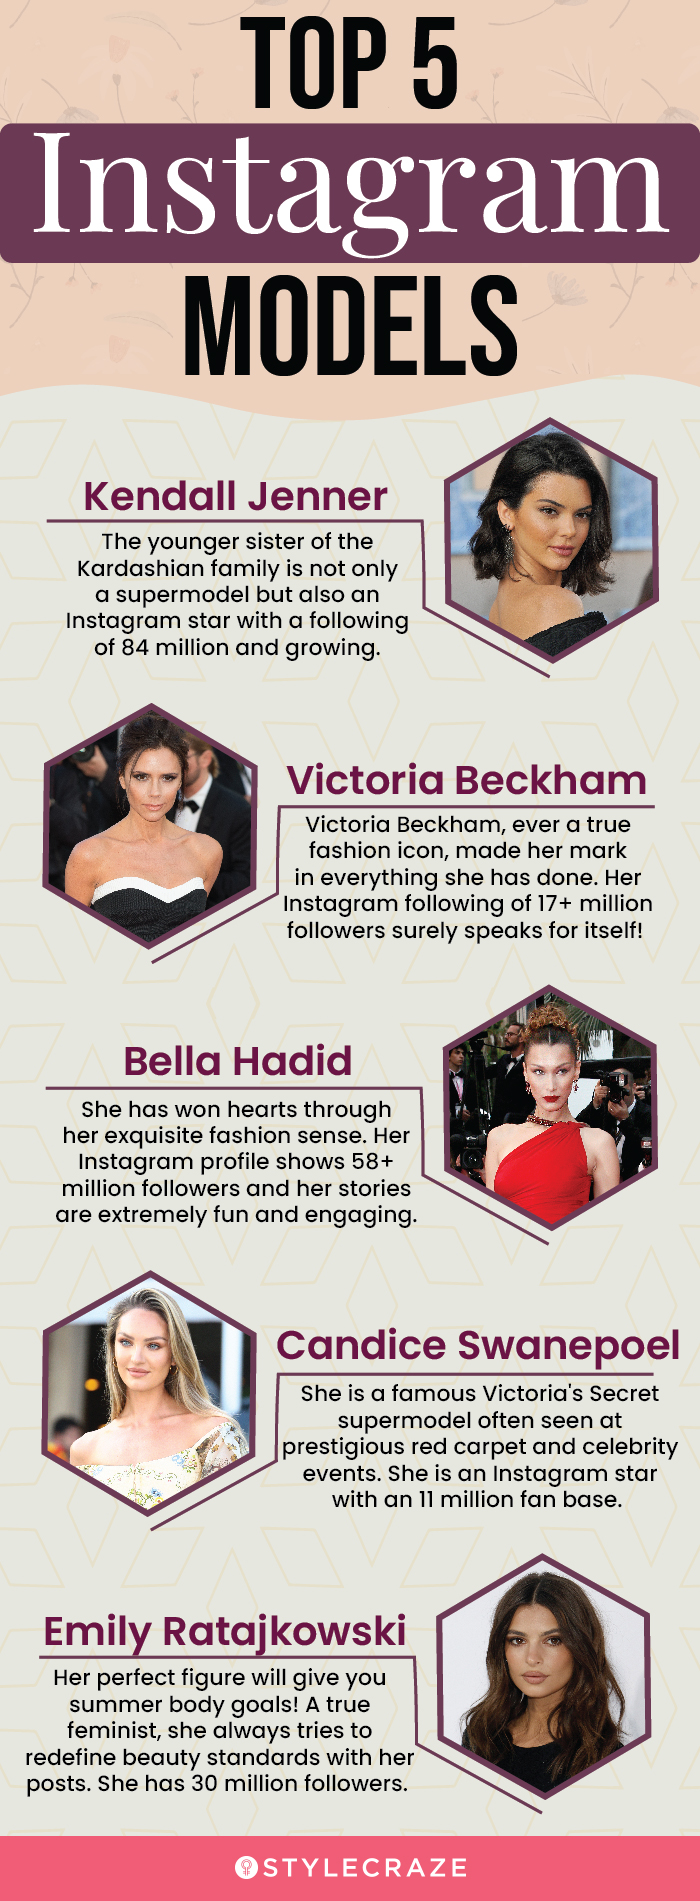 top 5 instagram models (infographic)